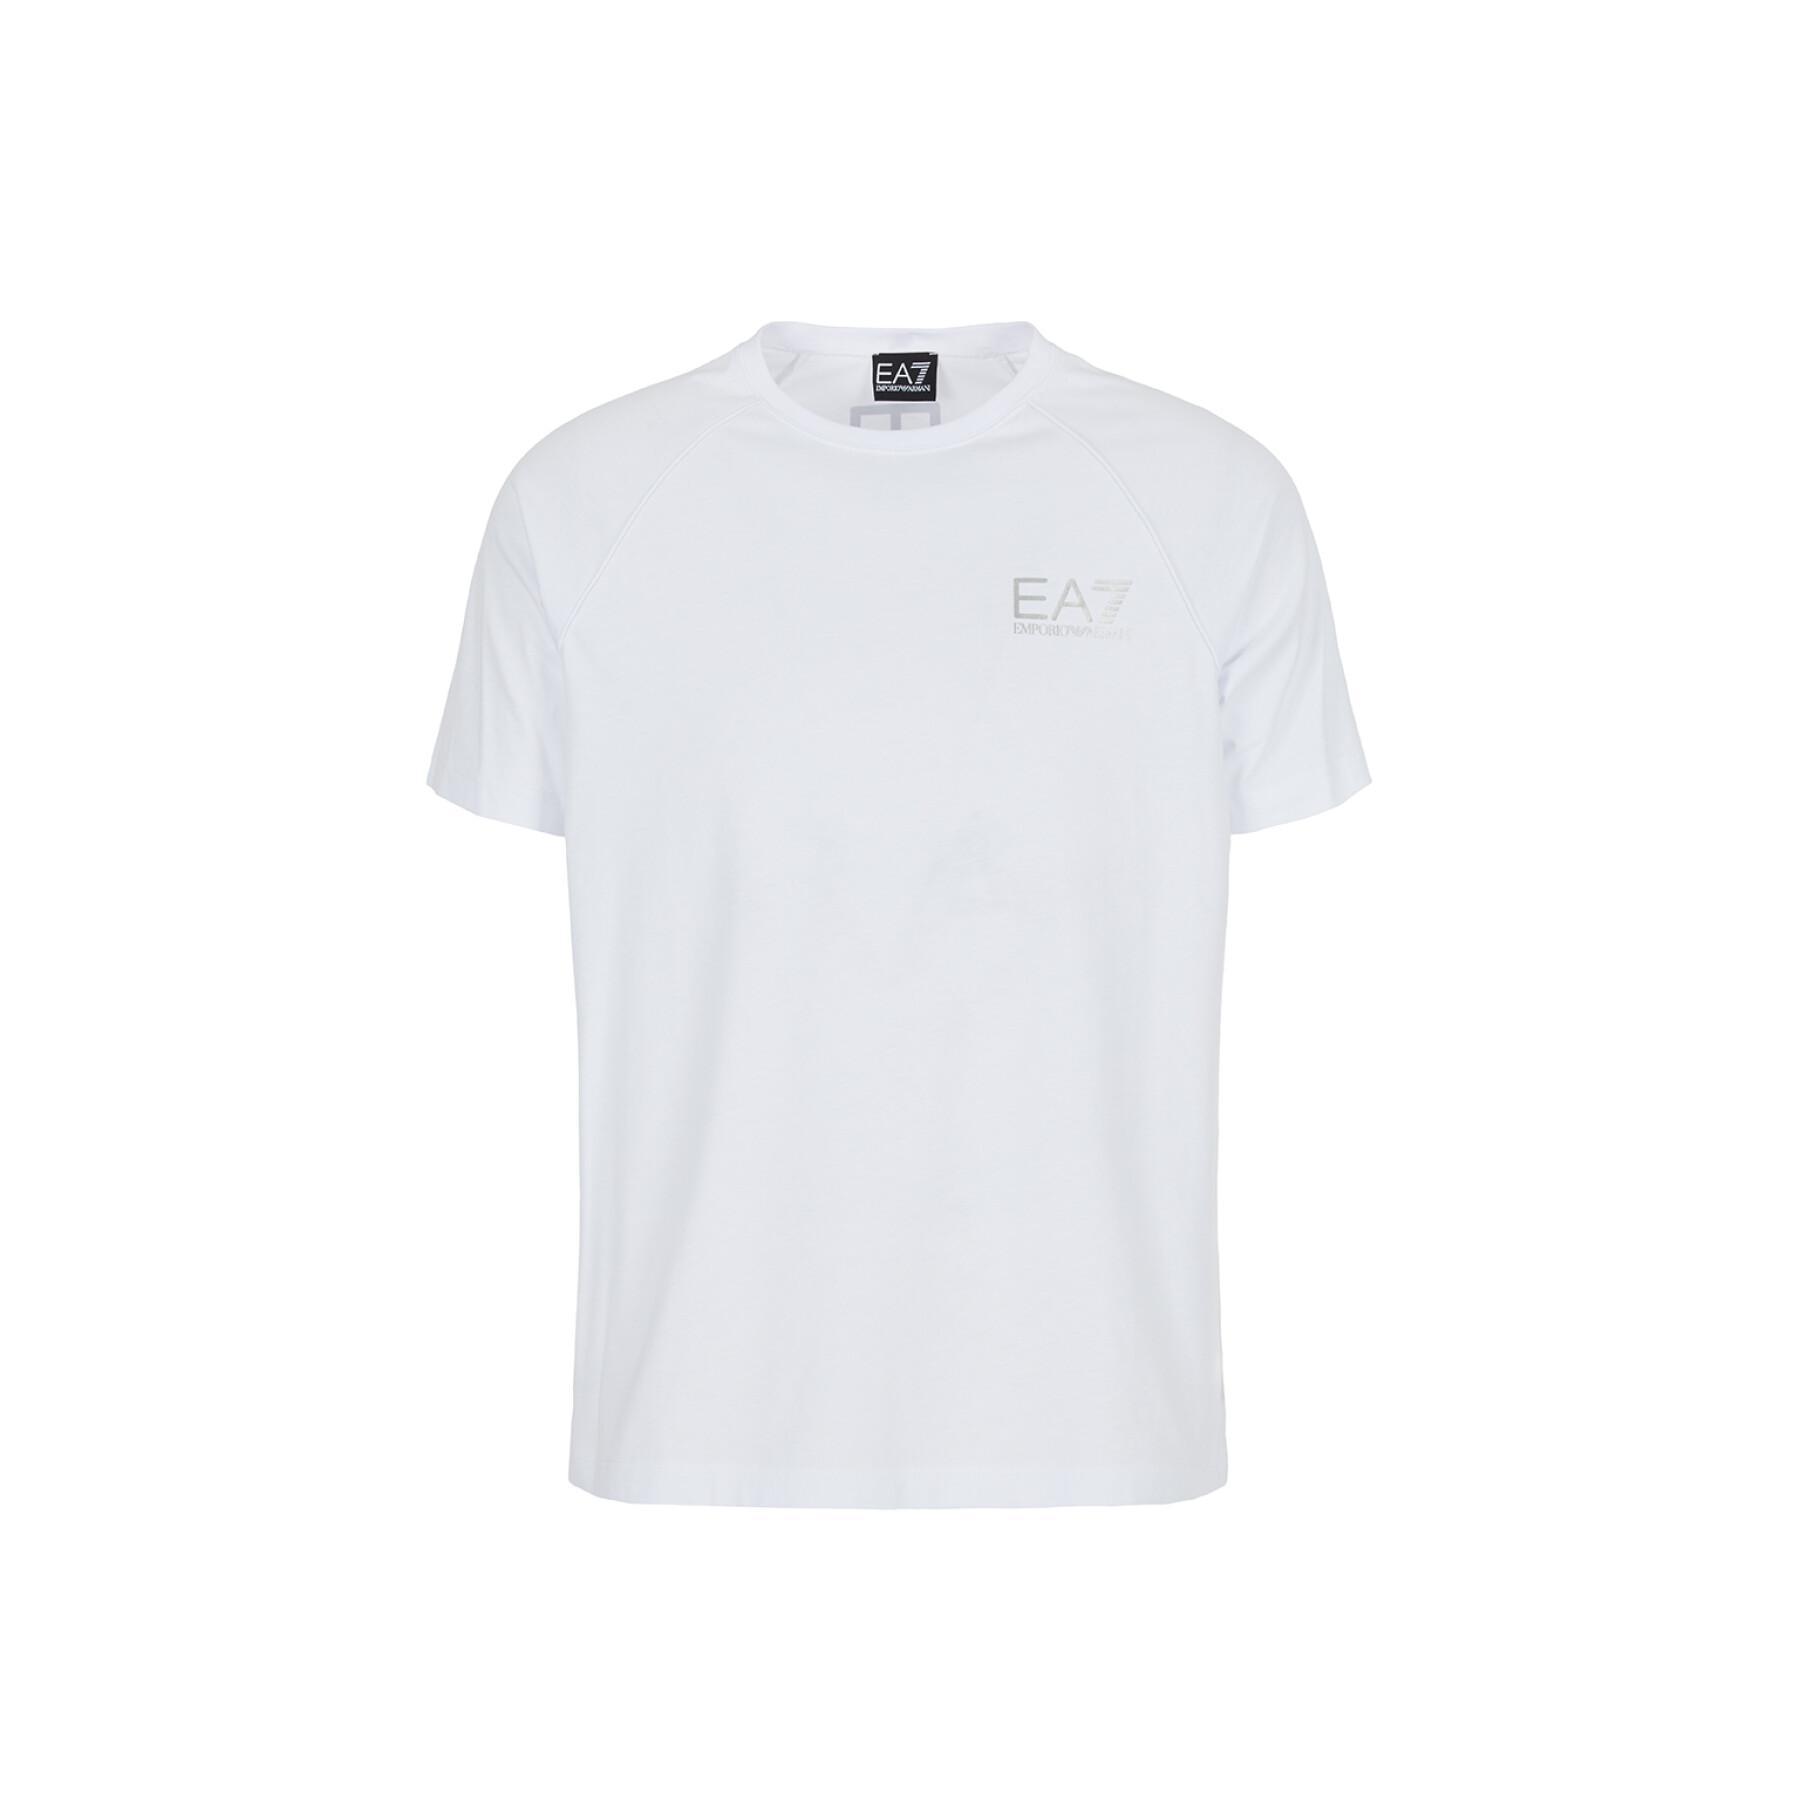 Camiseta EA7 Emporio Armani 6KPT25-PJ02Z blanco